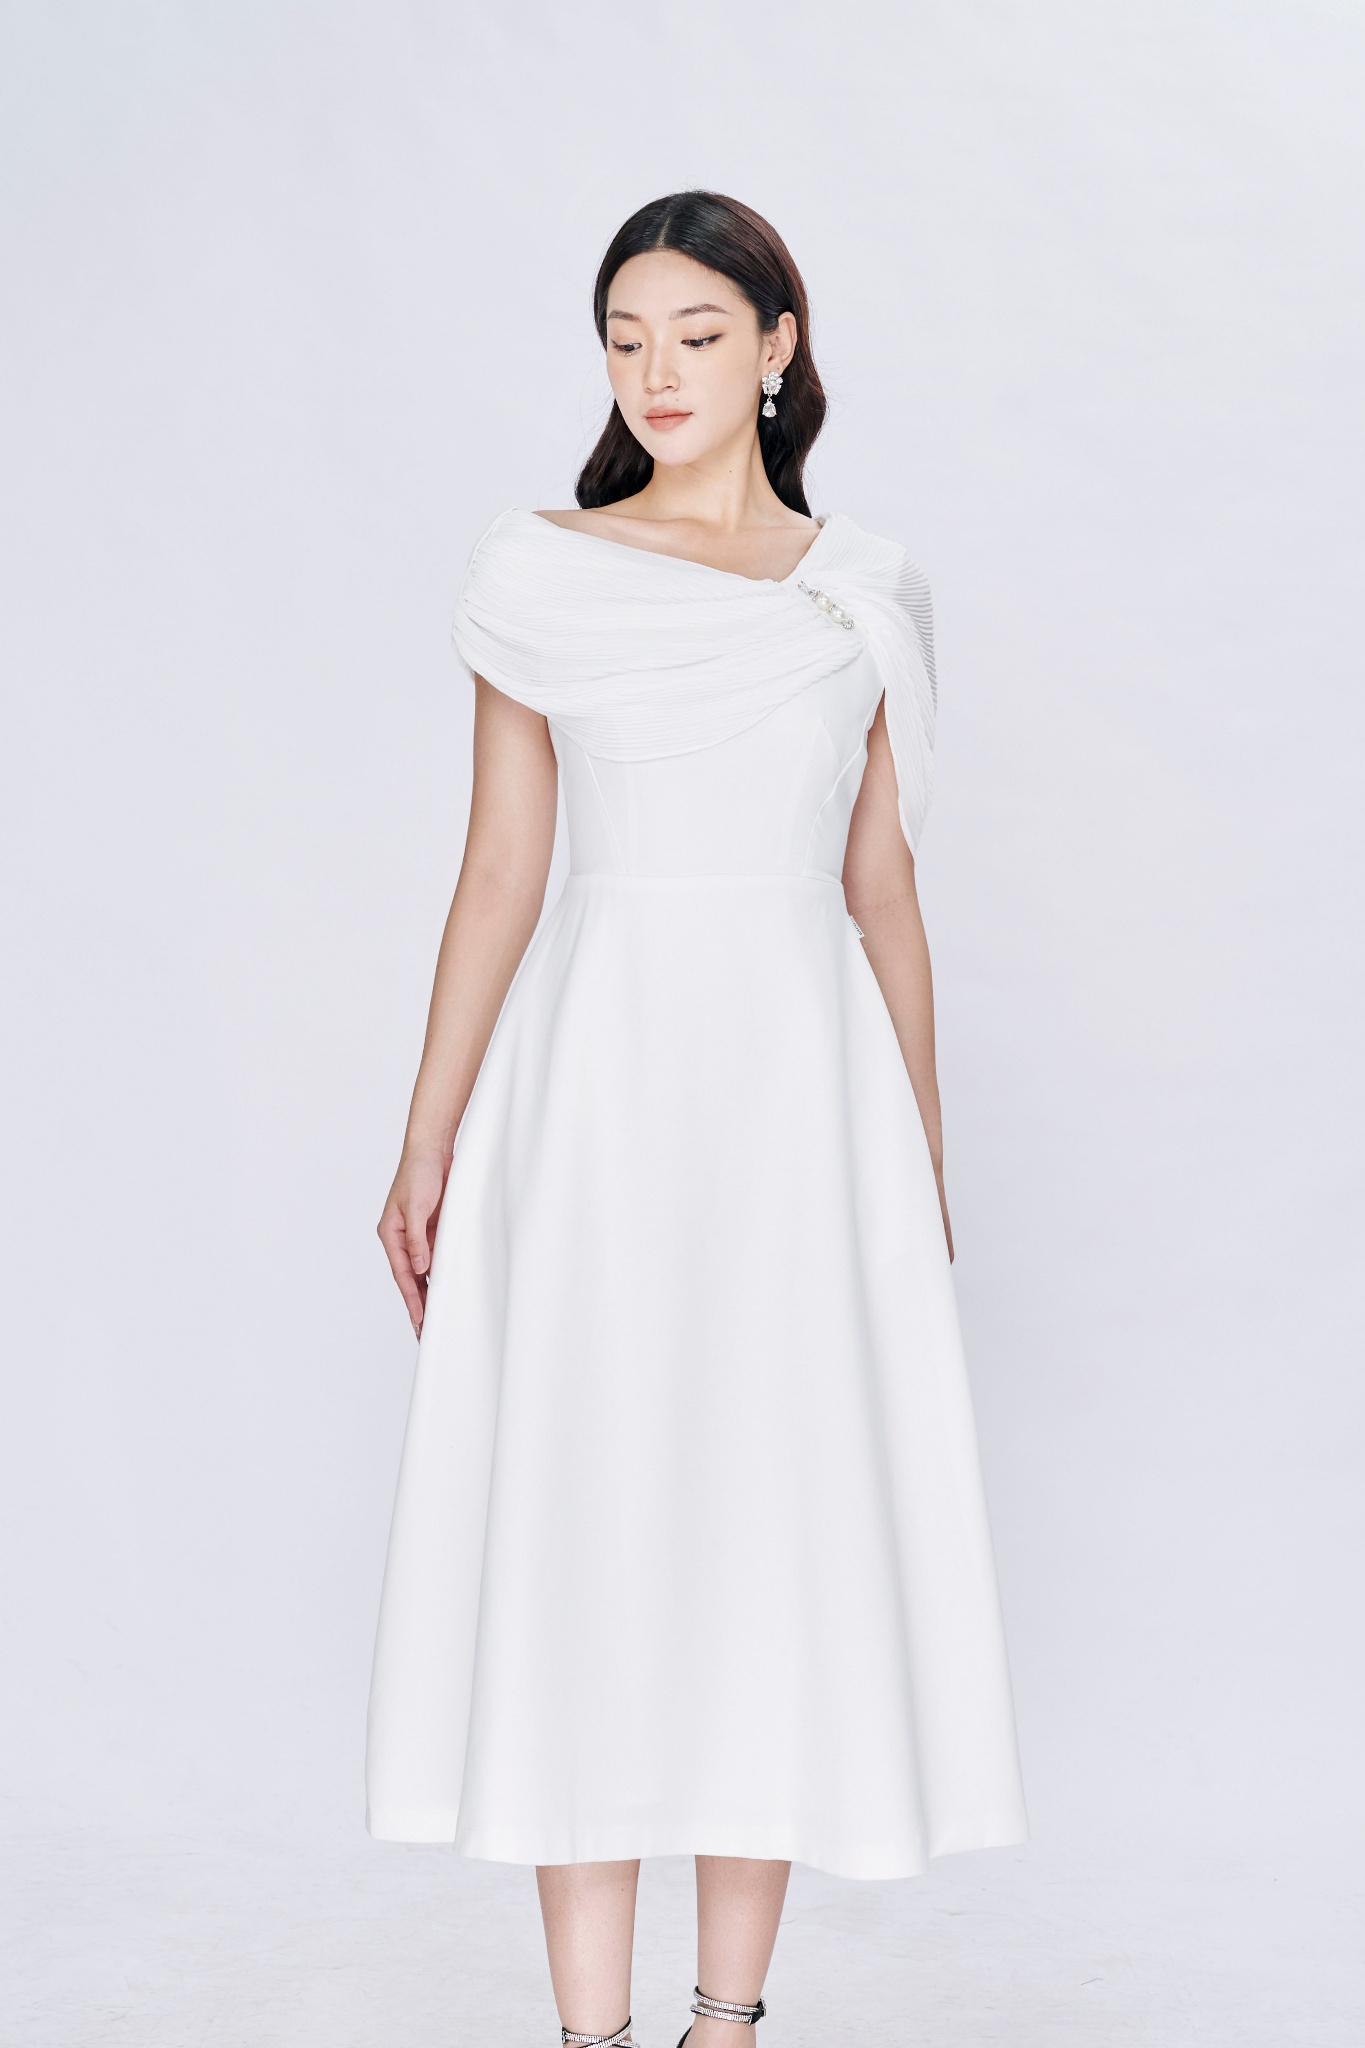 T&t design váy trượt cao cấp lệch vai trắng phối đen sang trọng,lịch thiệp